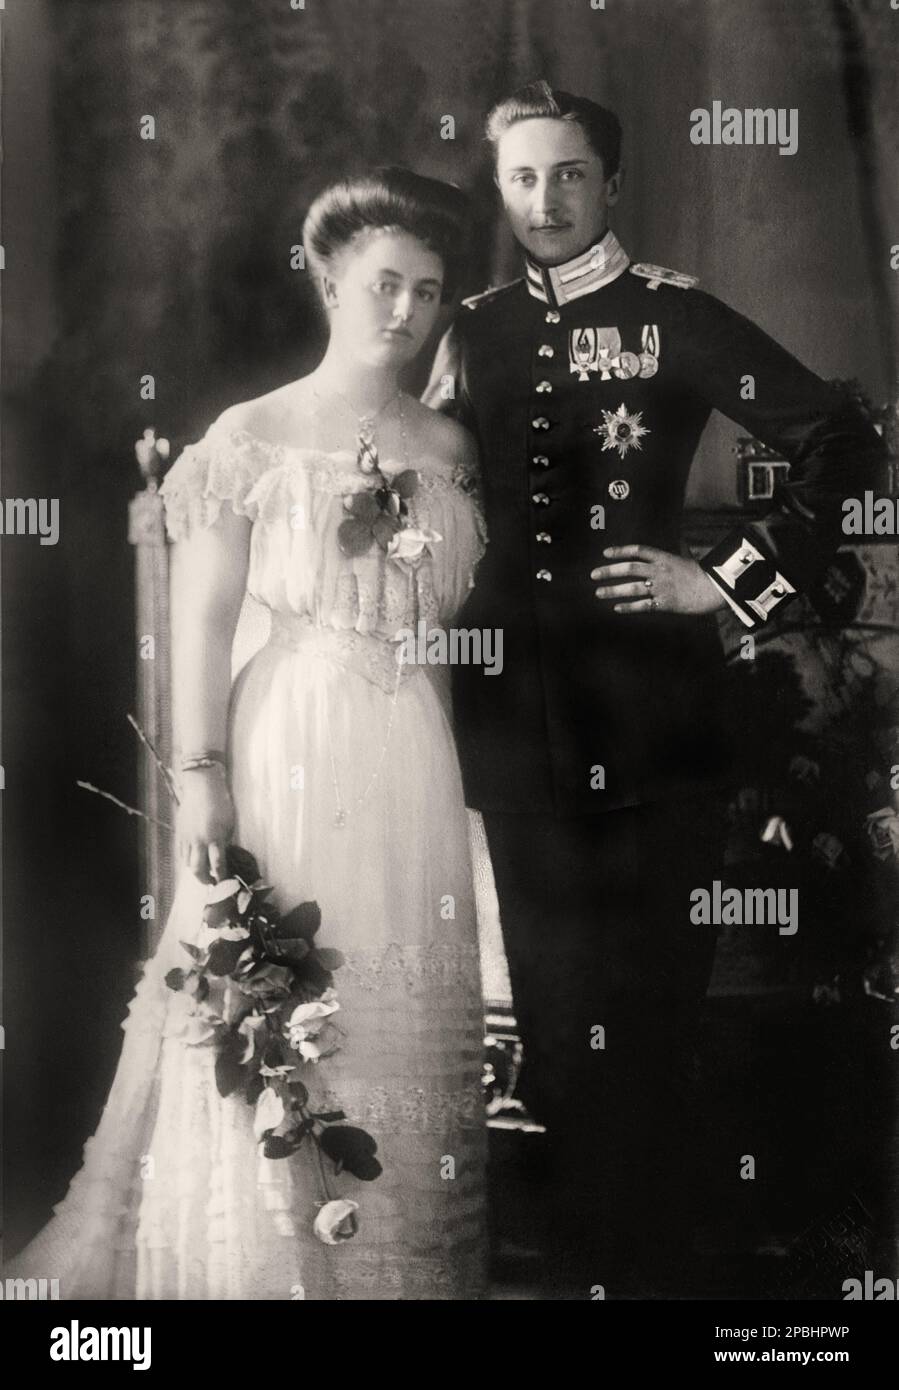 1908 , octubre , FRANKFURT , ALEMANIA: Foto oficial de compromiso de la princesa ALEXANDRA VICTORIA de Schleswig-Holstein-Sonderburg-Glucksburg ( 1887 - 1957 ), casada el 22 de octubre de 1908 con el príncipe Augusto Guillermo de Prusia ( 1887 - 1949 ), llamado Auwi, el cuarto hijo del Kaiser GUILLERMO II ( Guglielmo II ) HOHENZOLLERN , Rey de Prusia, Emperador de Alemania ( 1859 - 1941 ). De matrimonio nació un solo hijo: Alejandro Fernando de Prusia ( 1912 - 1985 ). La pareja se divorció el 16 de marzo de 1920. Se casó en segundo lugar con Arnold Rümann el 7 de enero de 1922 en Grunholz y se divorció en 1933. Foto de T.H. Foto de stock